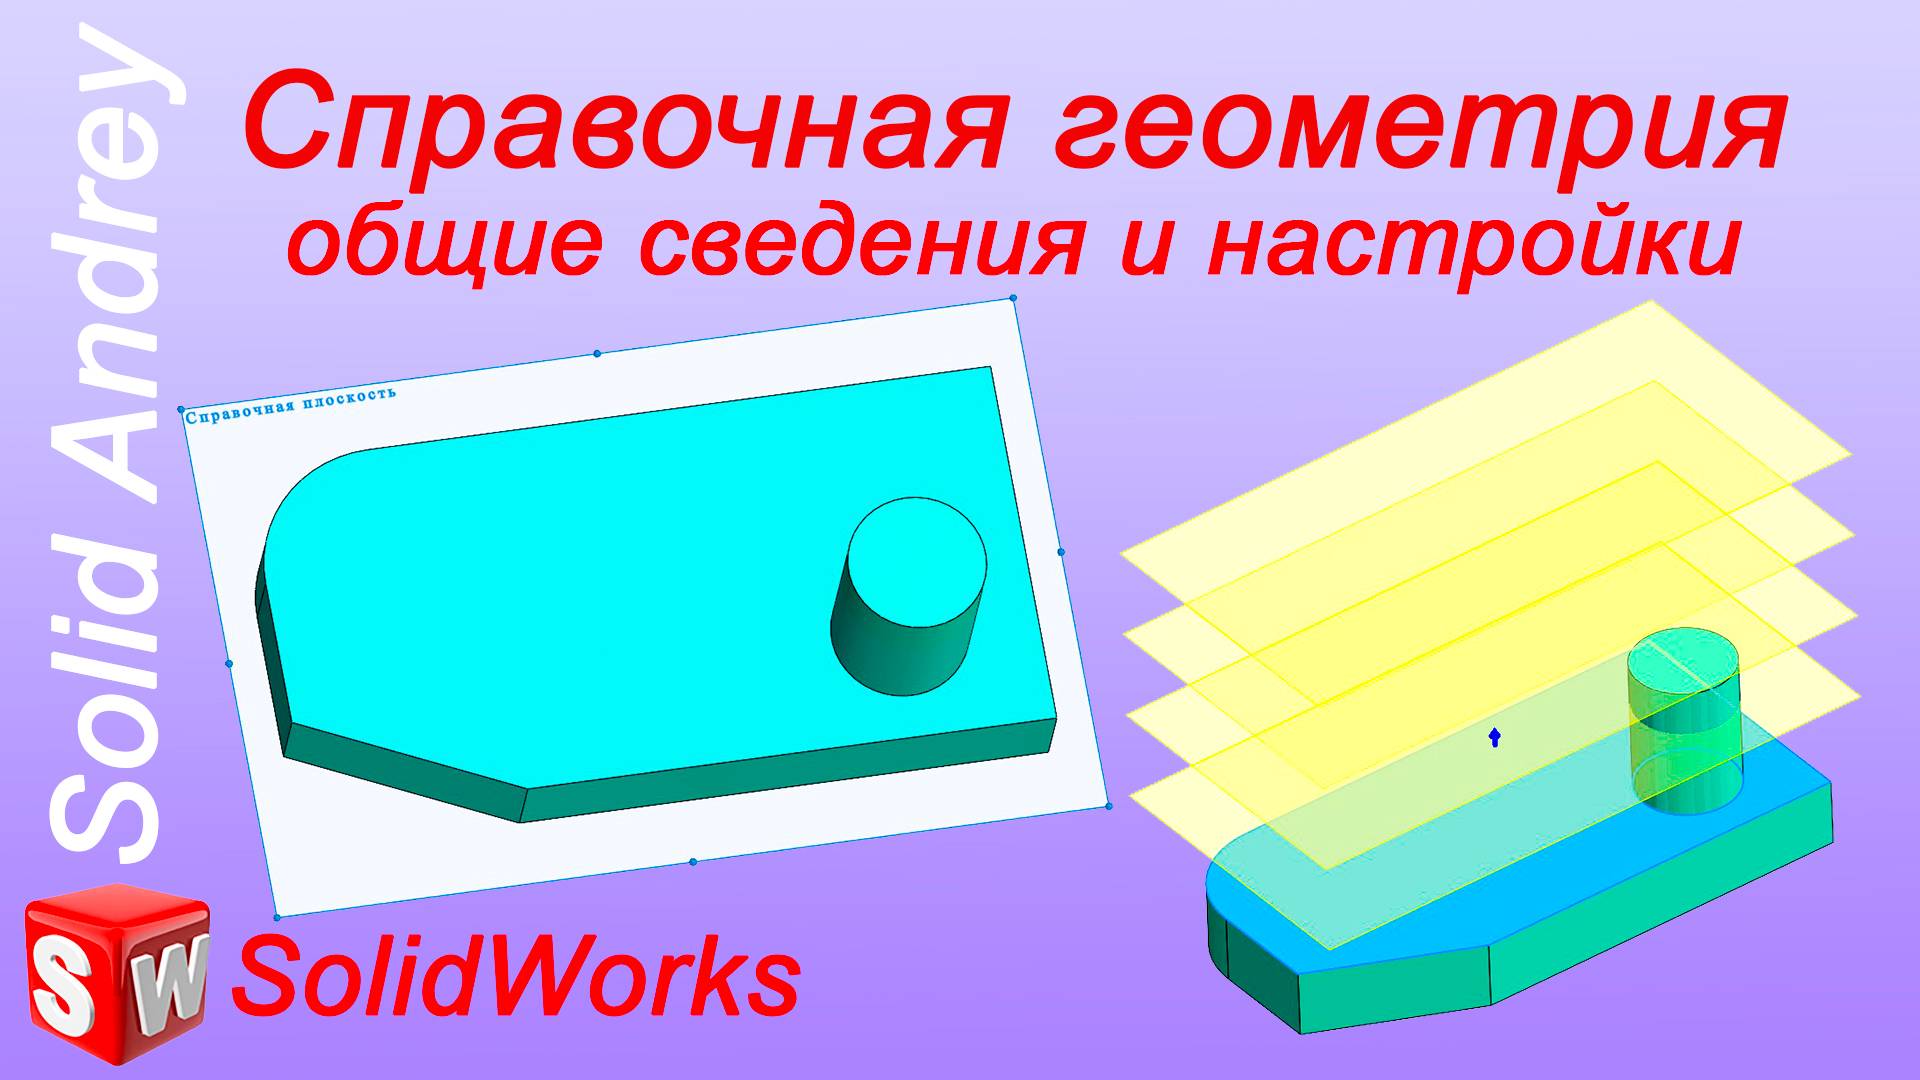 SolidWorks. Справочная геометрия: общие сведения и настройки